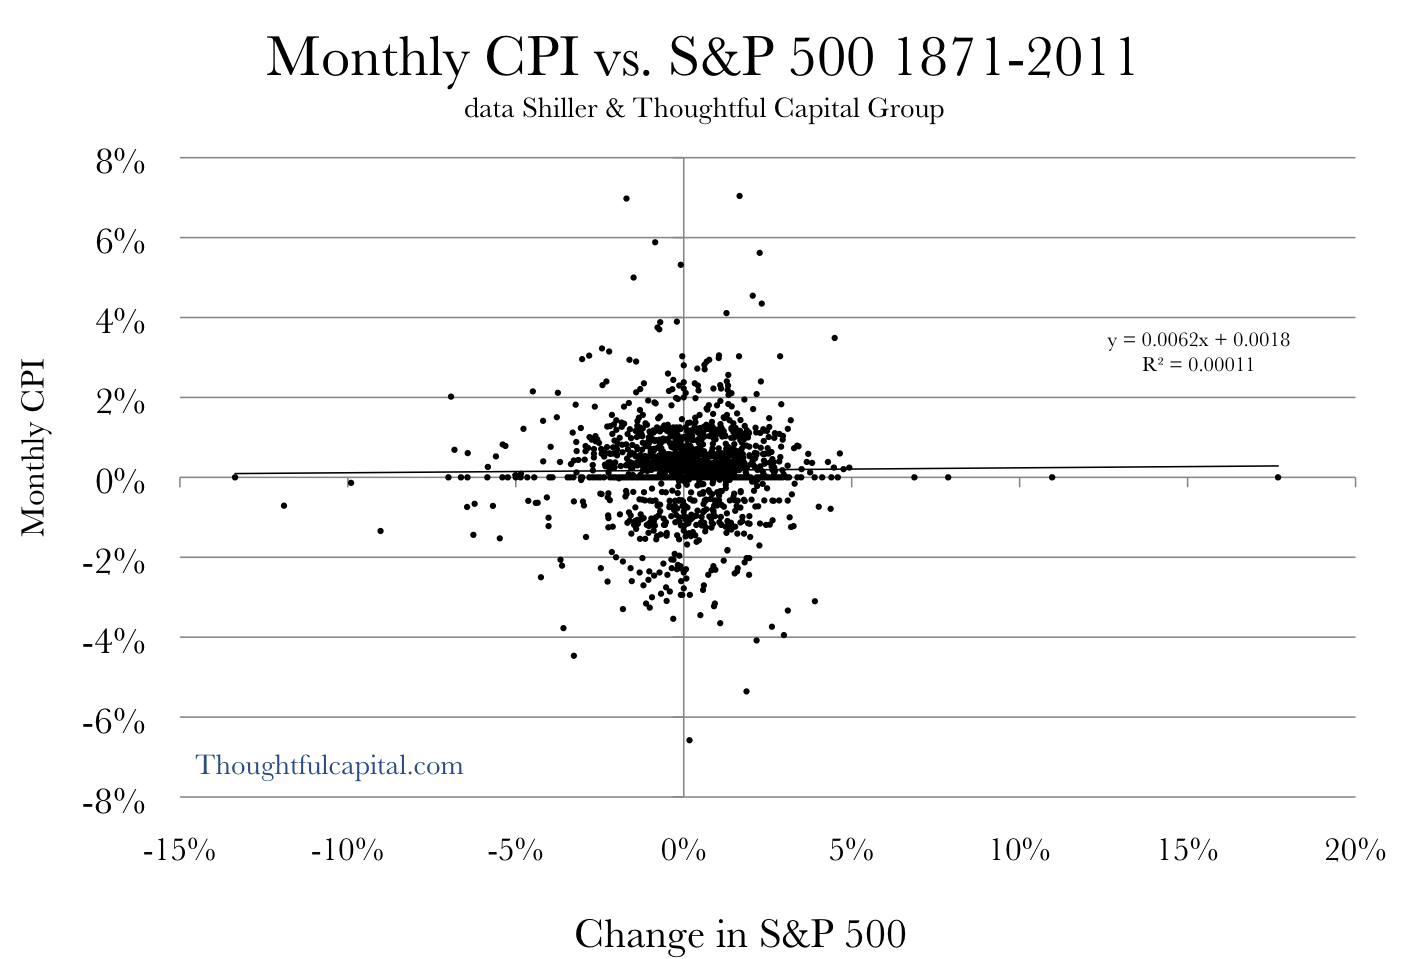 Monthly CPI versus S&P 500 1871-2011